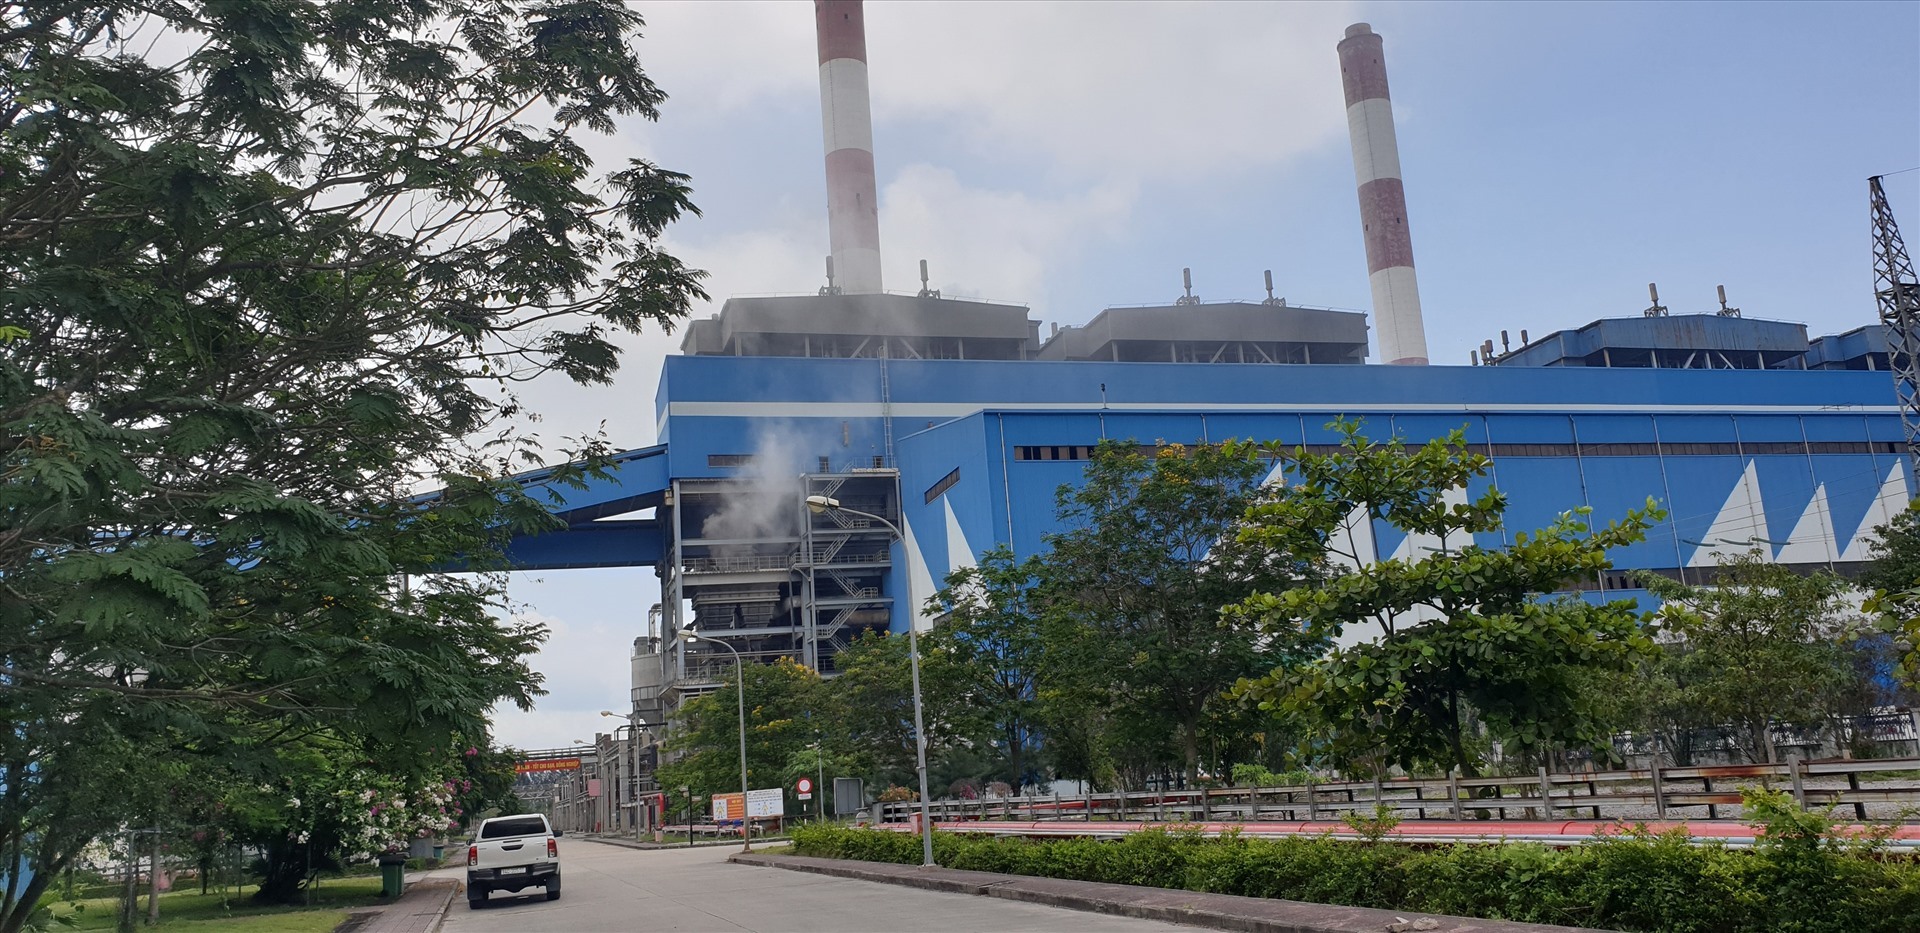 Nhà máy Nhiệt điện Cẩm Phả. Ảnh: Nguyễn Hùng